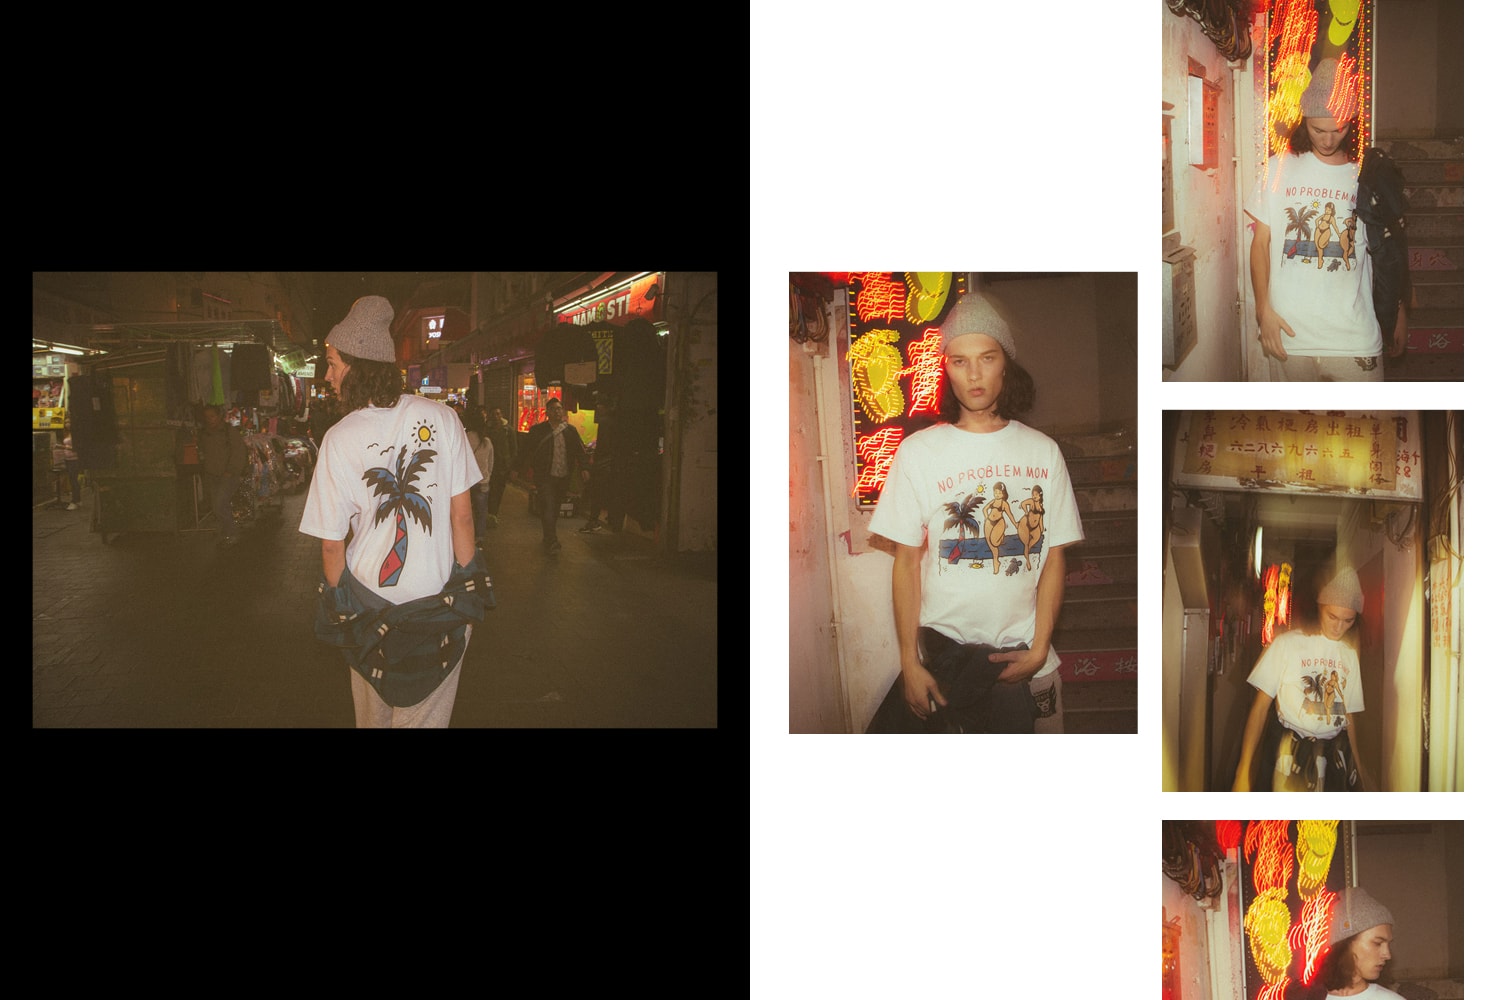 차이나타운 마켓 2017 가을 겨울 컬렉션 에이치비엑스 단독 화보 chinatown market fall winter collection hbx exclusive editorial